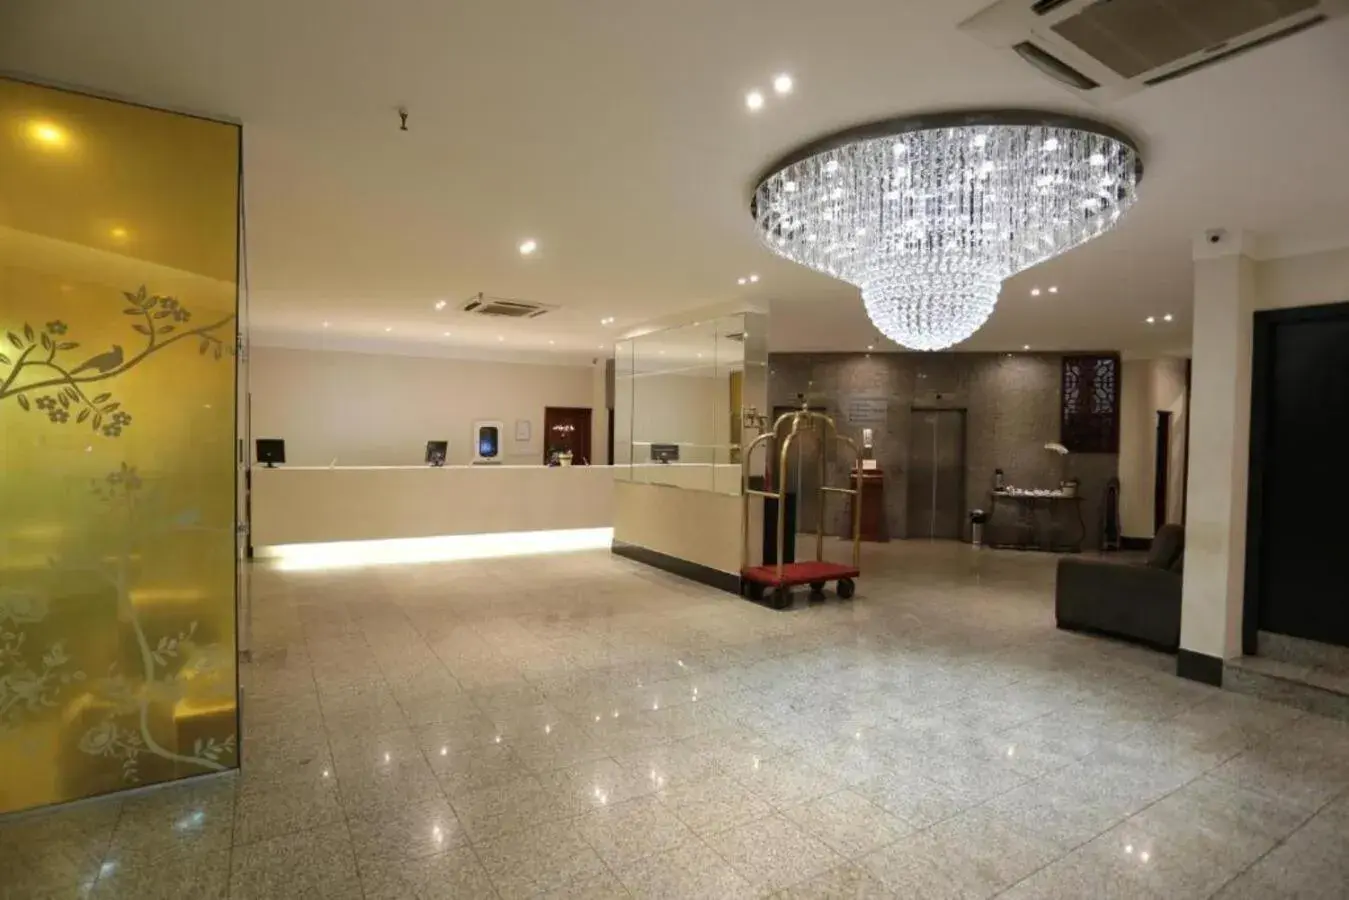 Lobby or reception, Lobby/Reception in Taiwan Hotel